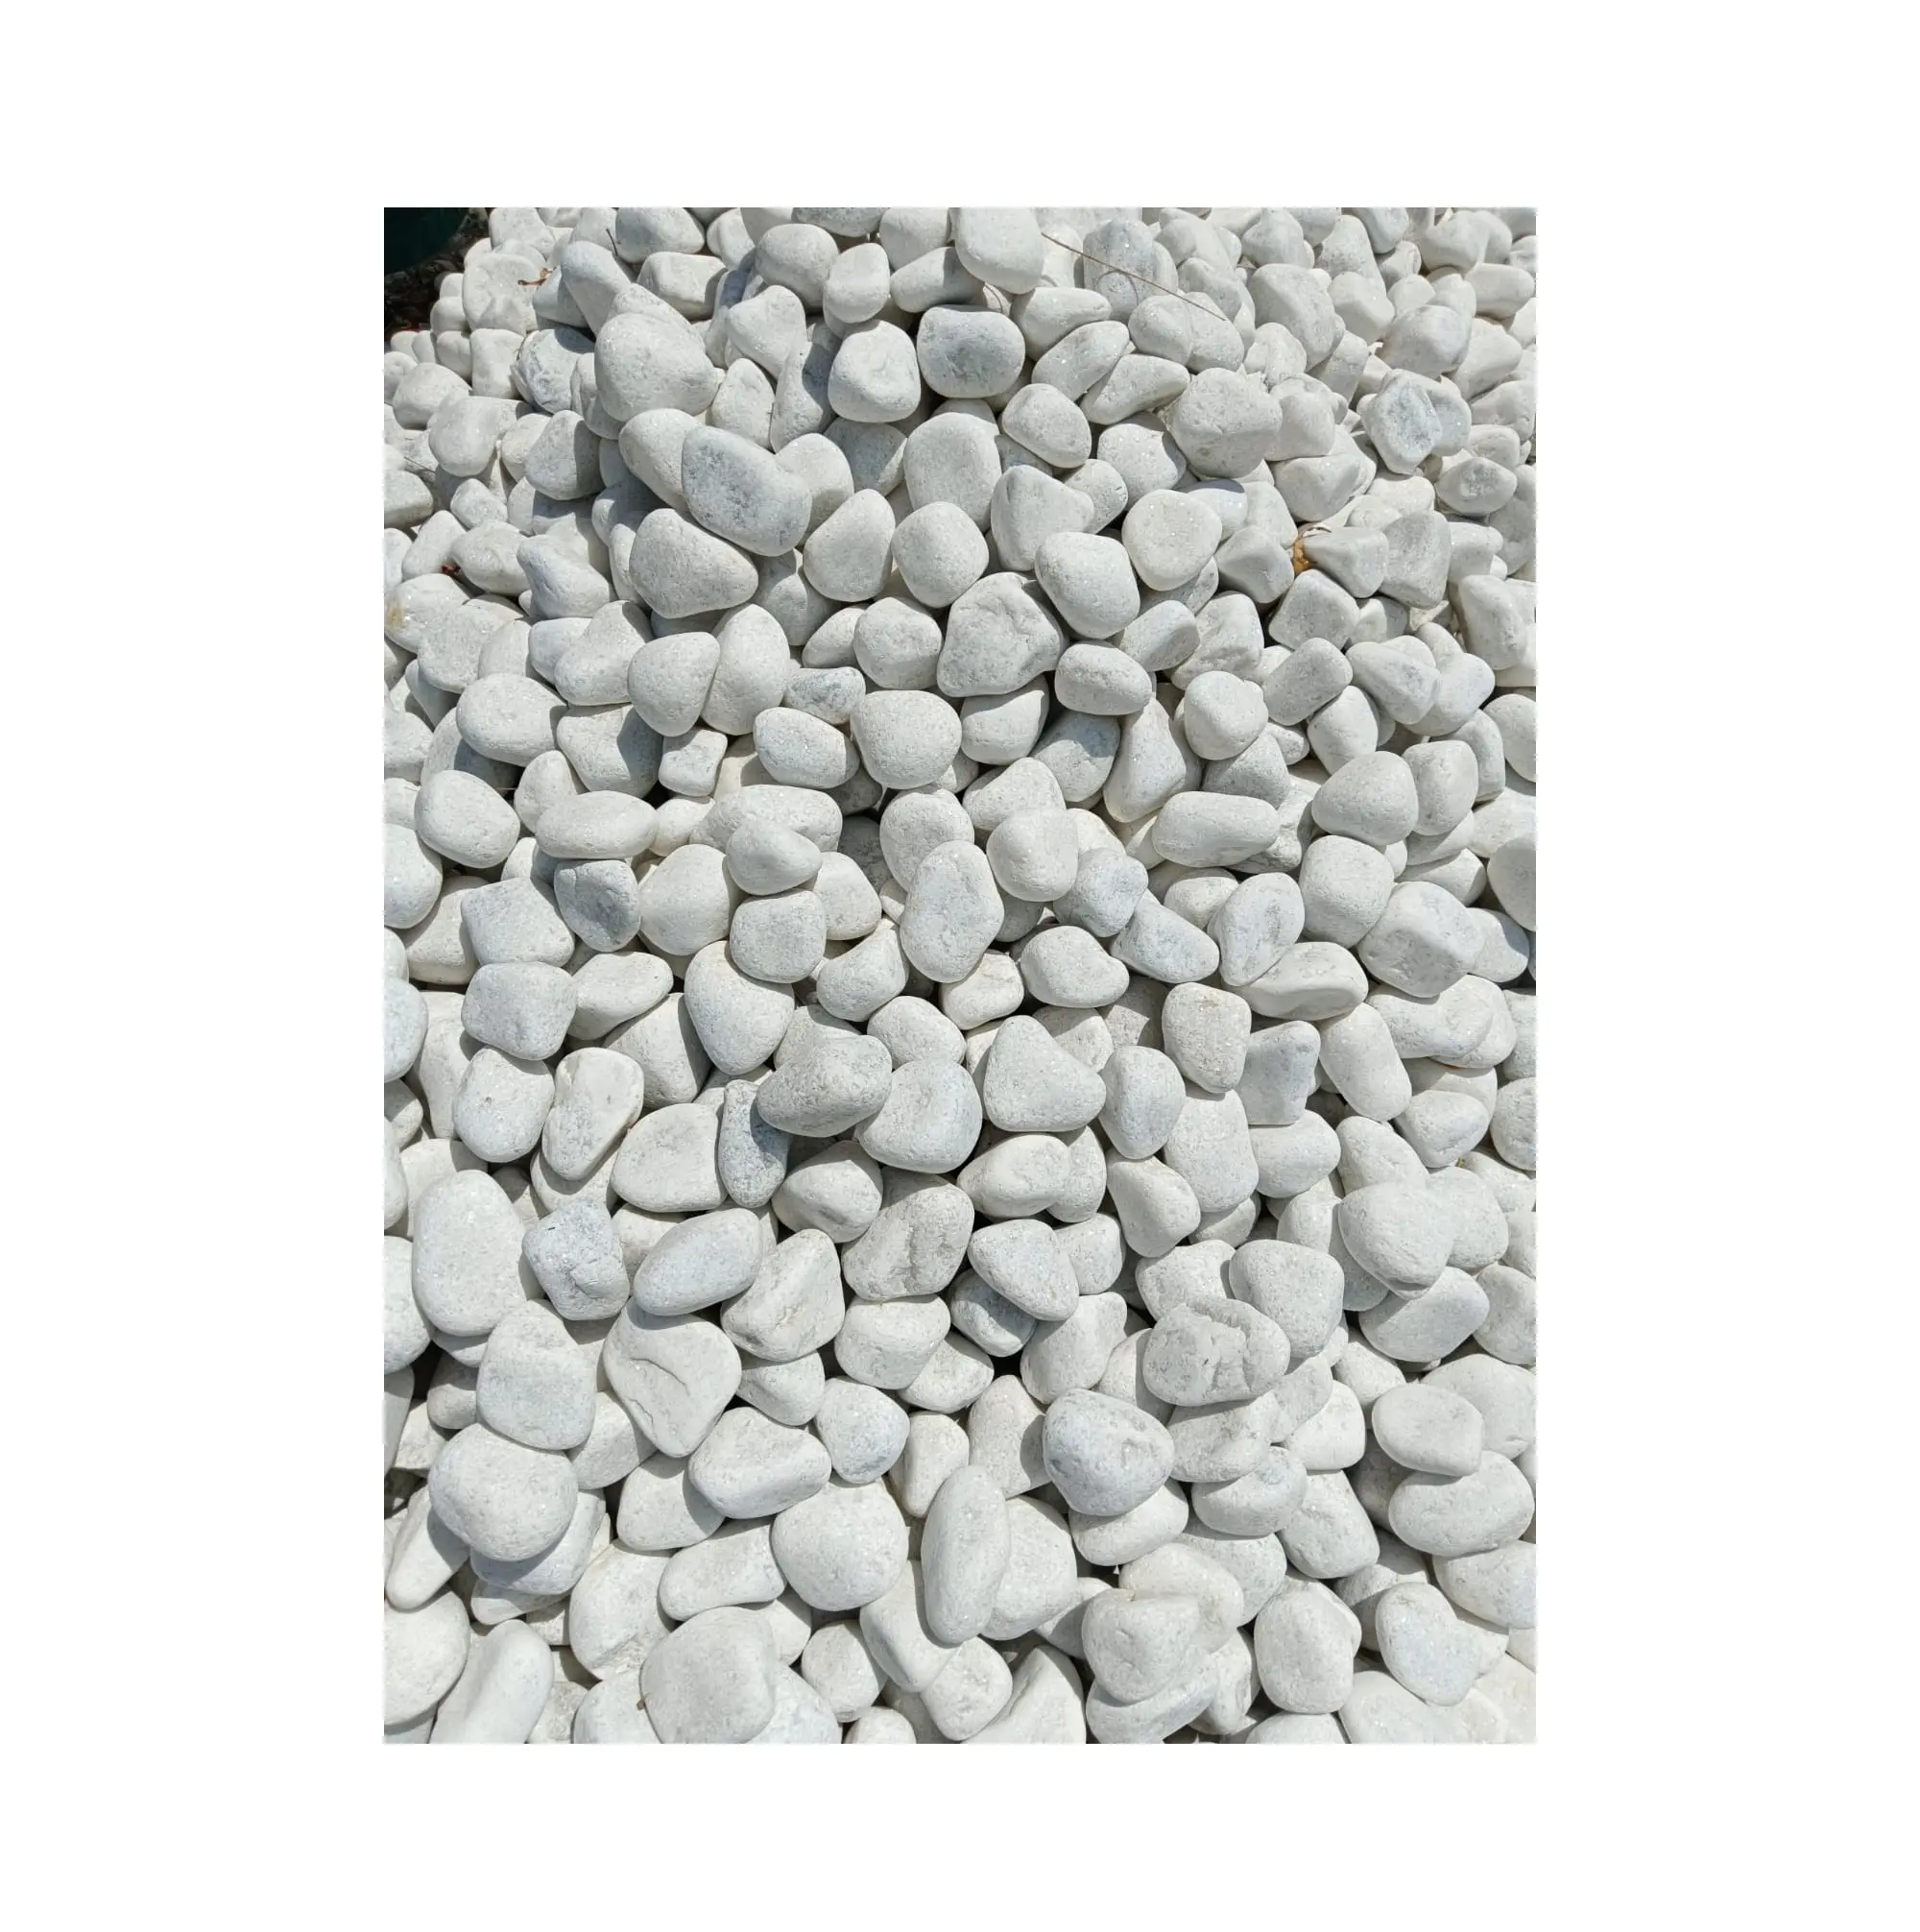 La plupart des ventes de roches naturelles de rivière blanche aménagement paysager galets plat rivière plage cailloux de pierre de l'exportateur indien